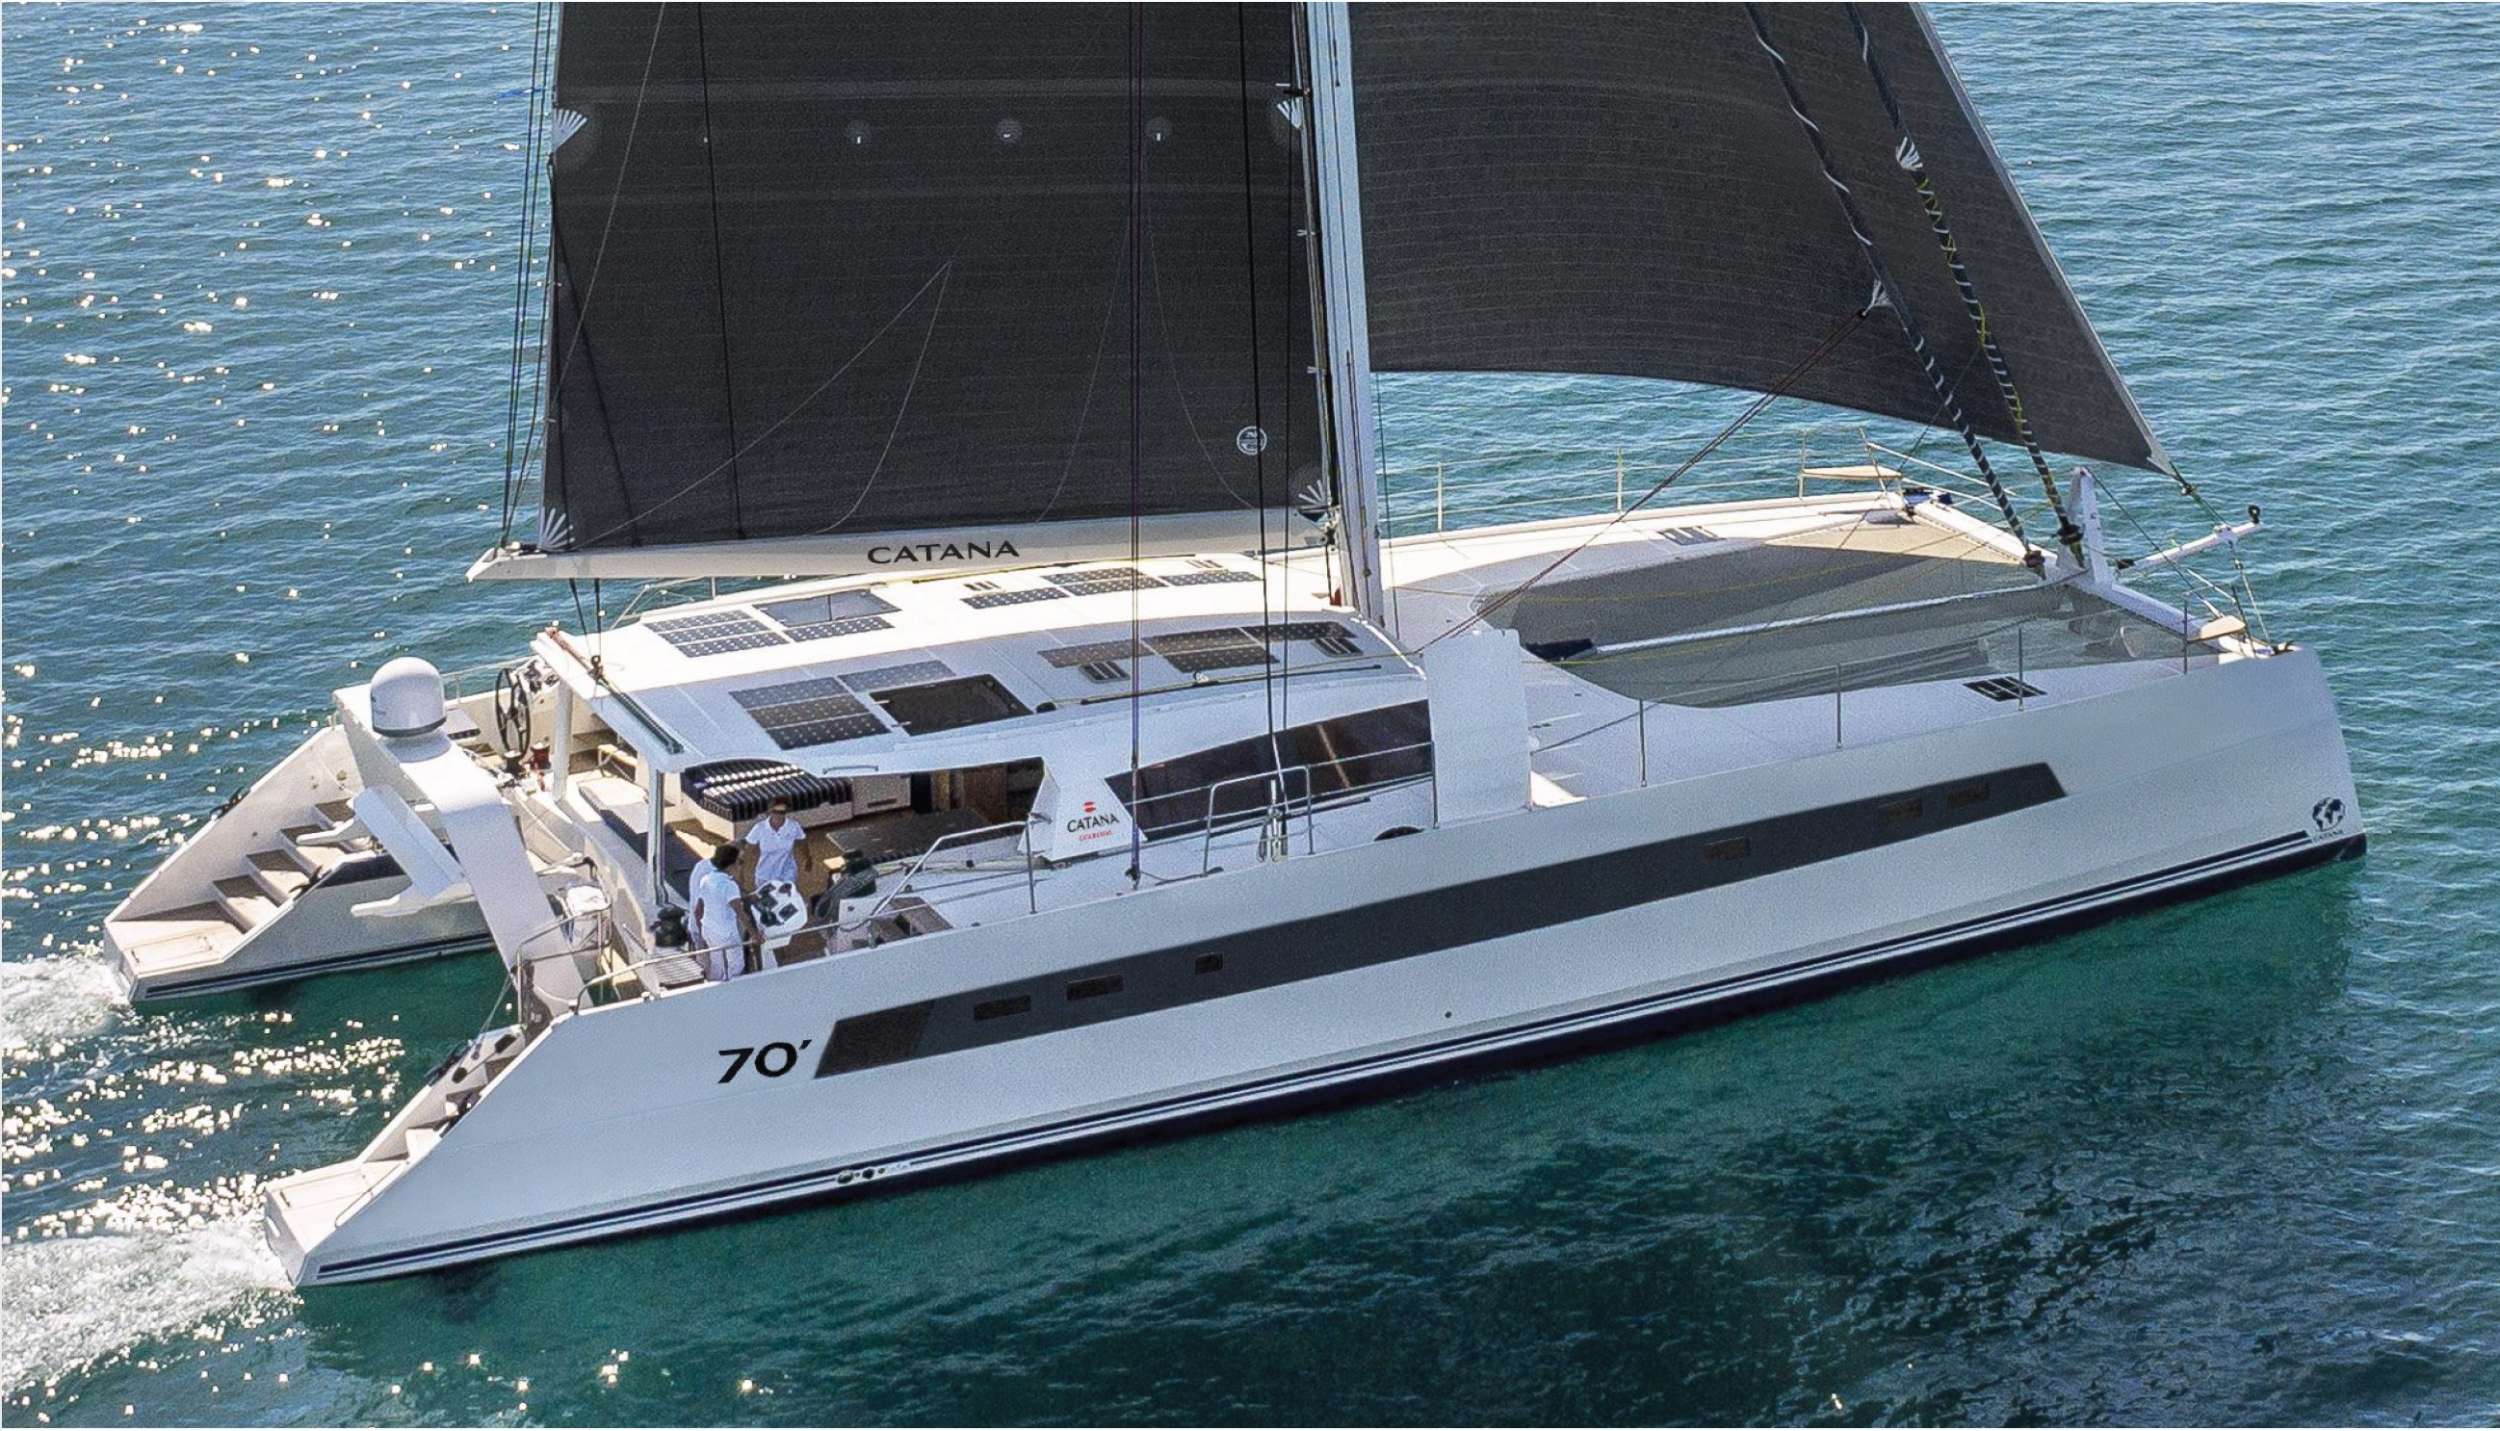 NEPTUNE - Yacht Charter Gaeta & Boat hire in Fr. Riviera & Tyrrhenian Sea 1